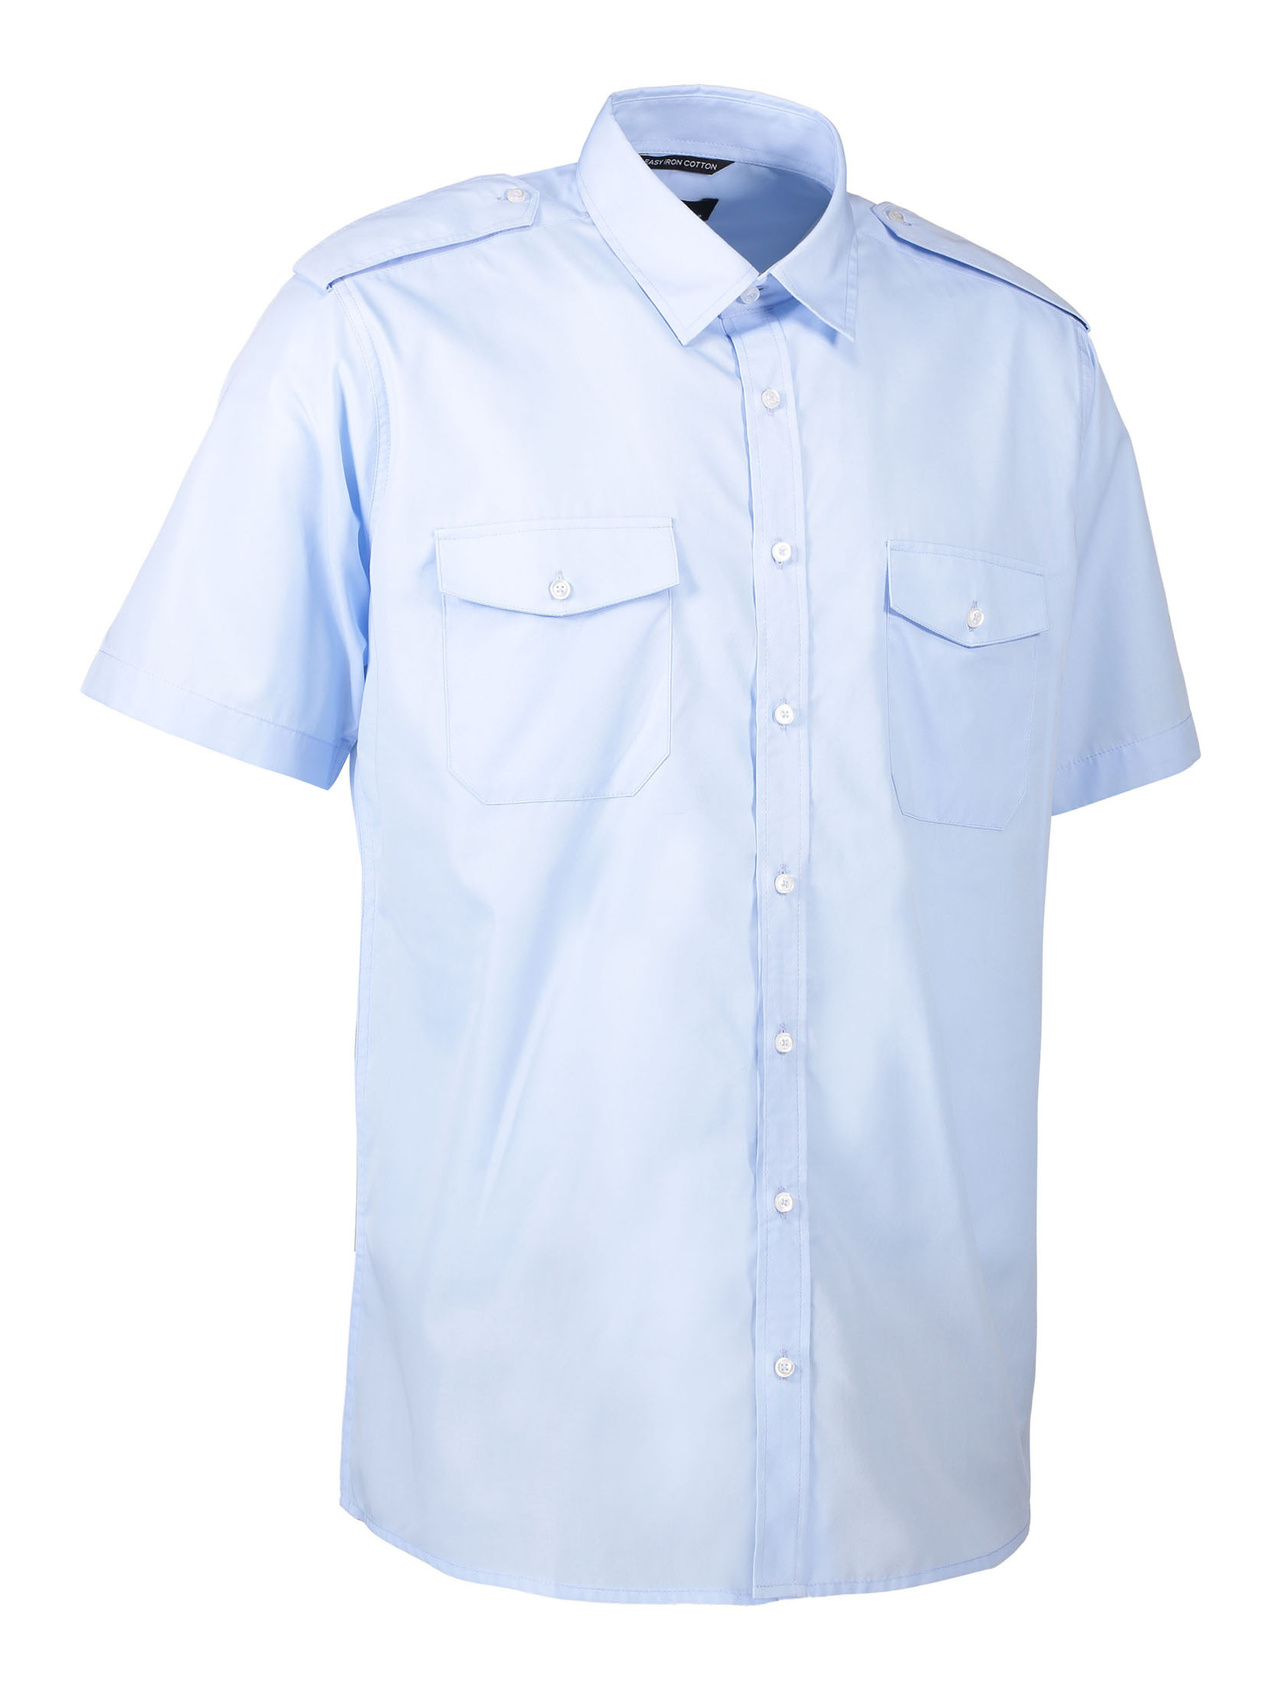 Uniformsskjorta kortärmad - Ljusblå